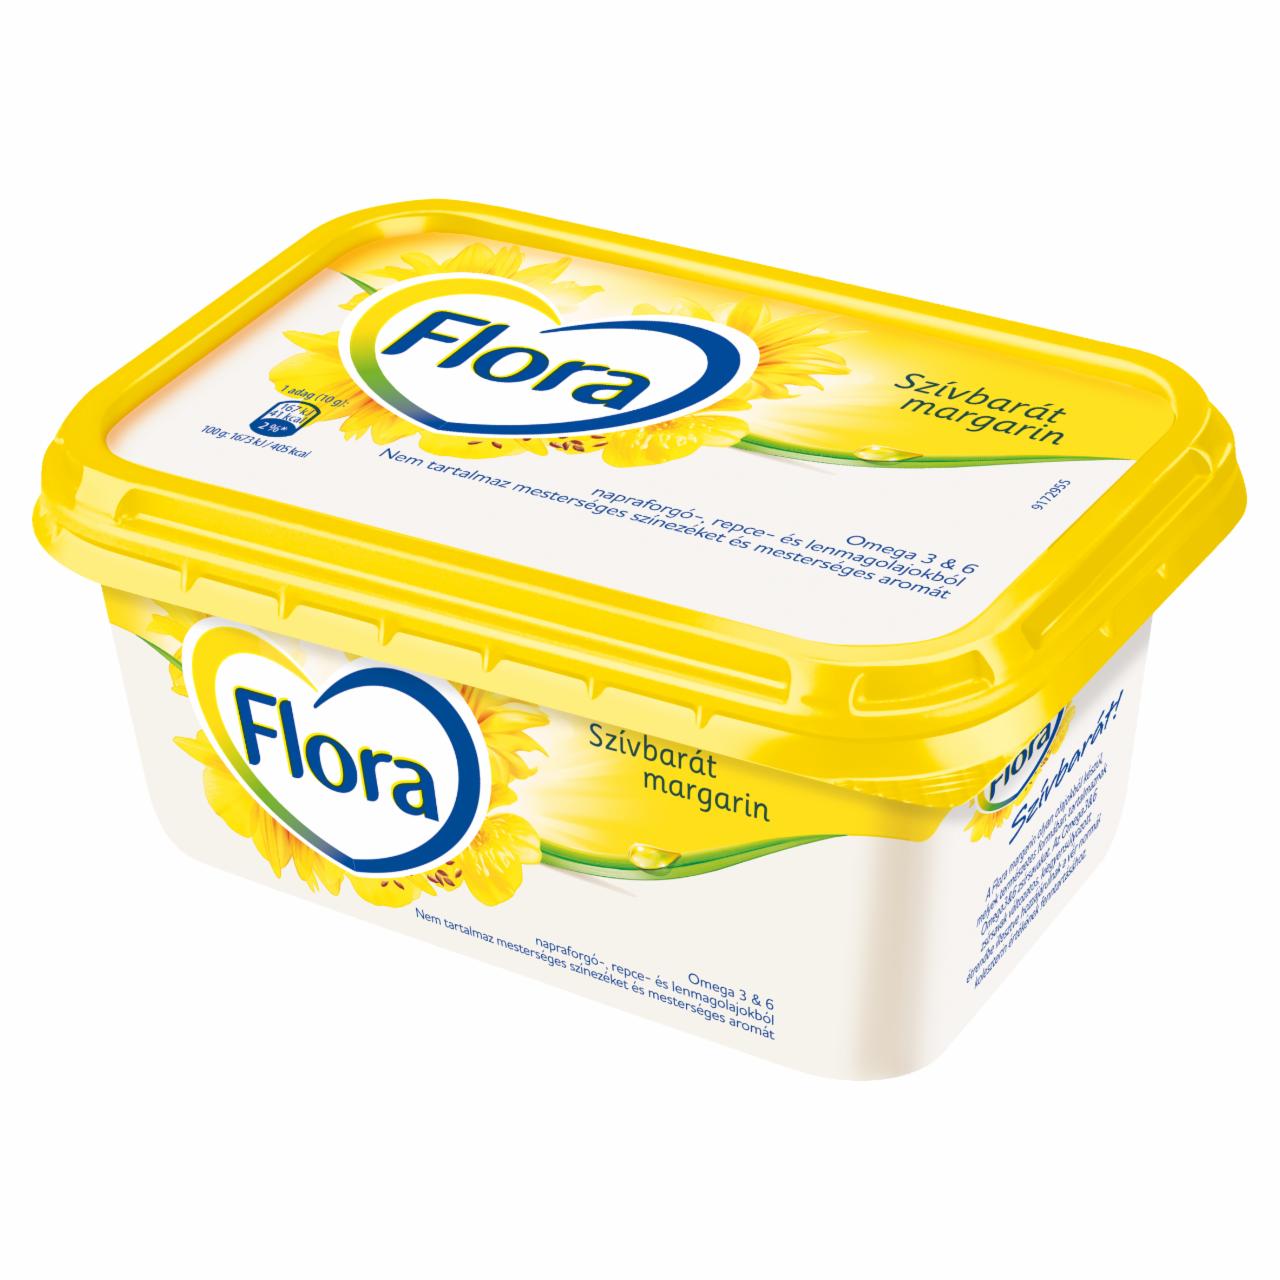 Képek - Flora csészés margarin 500 g